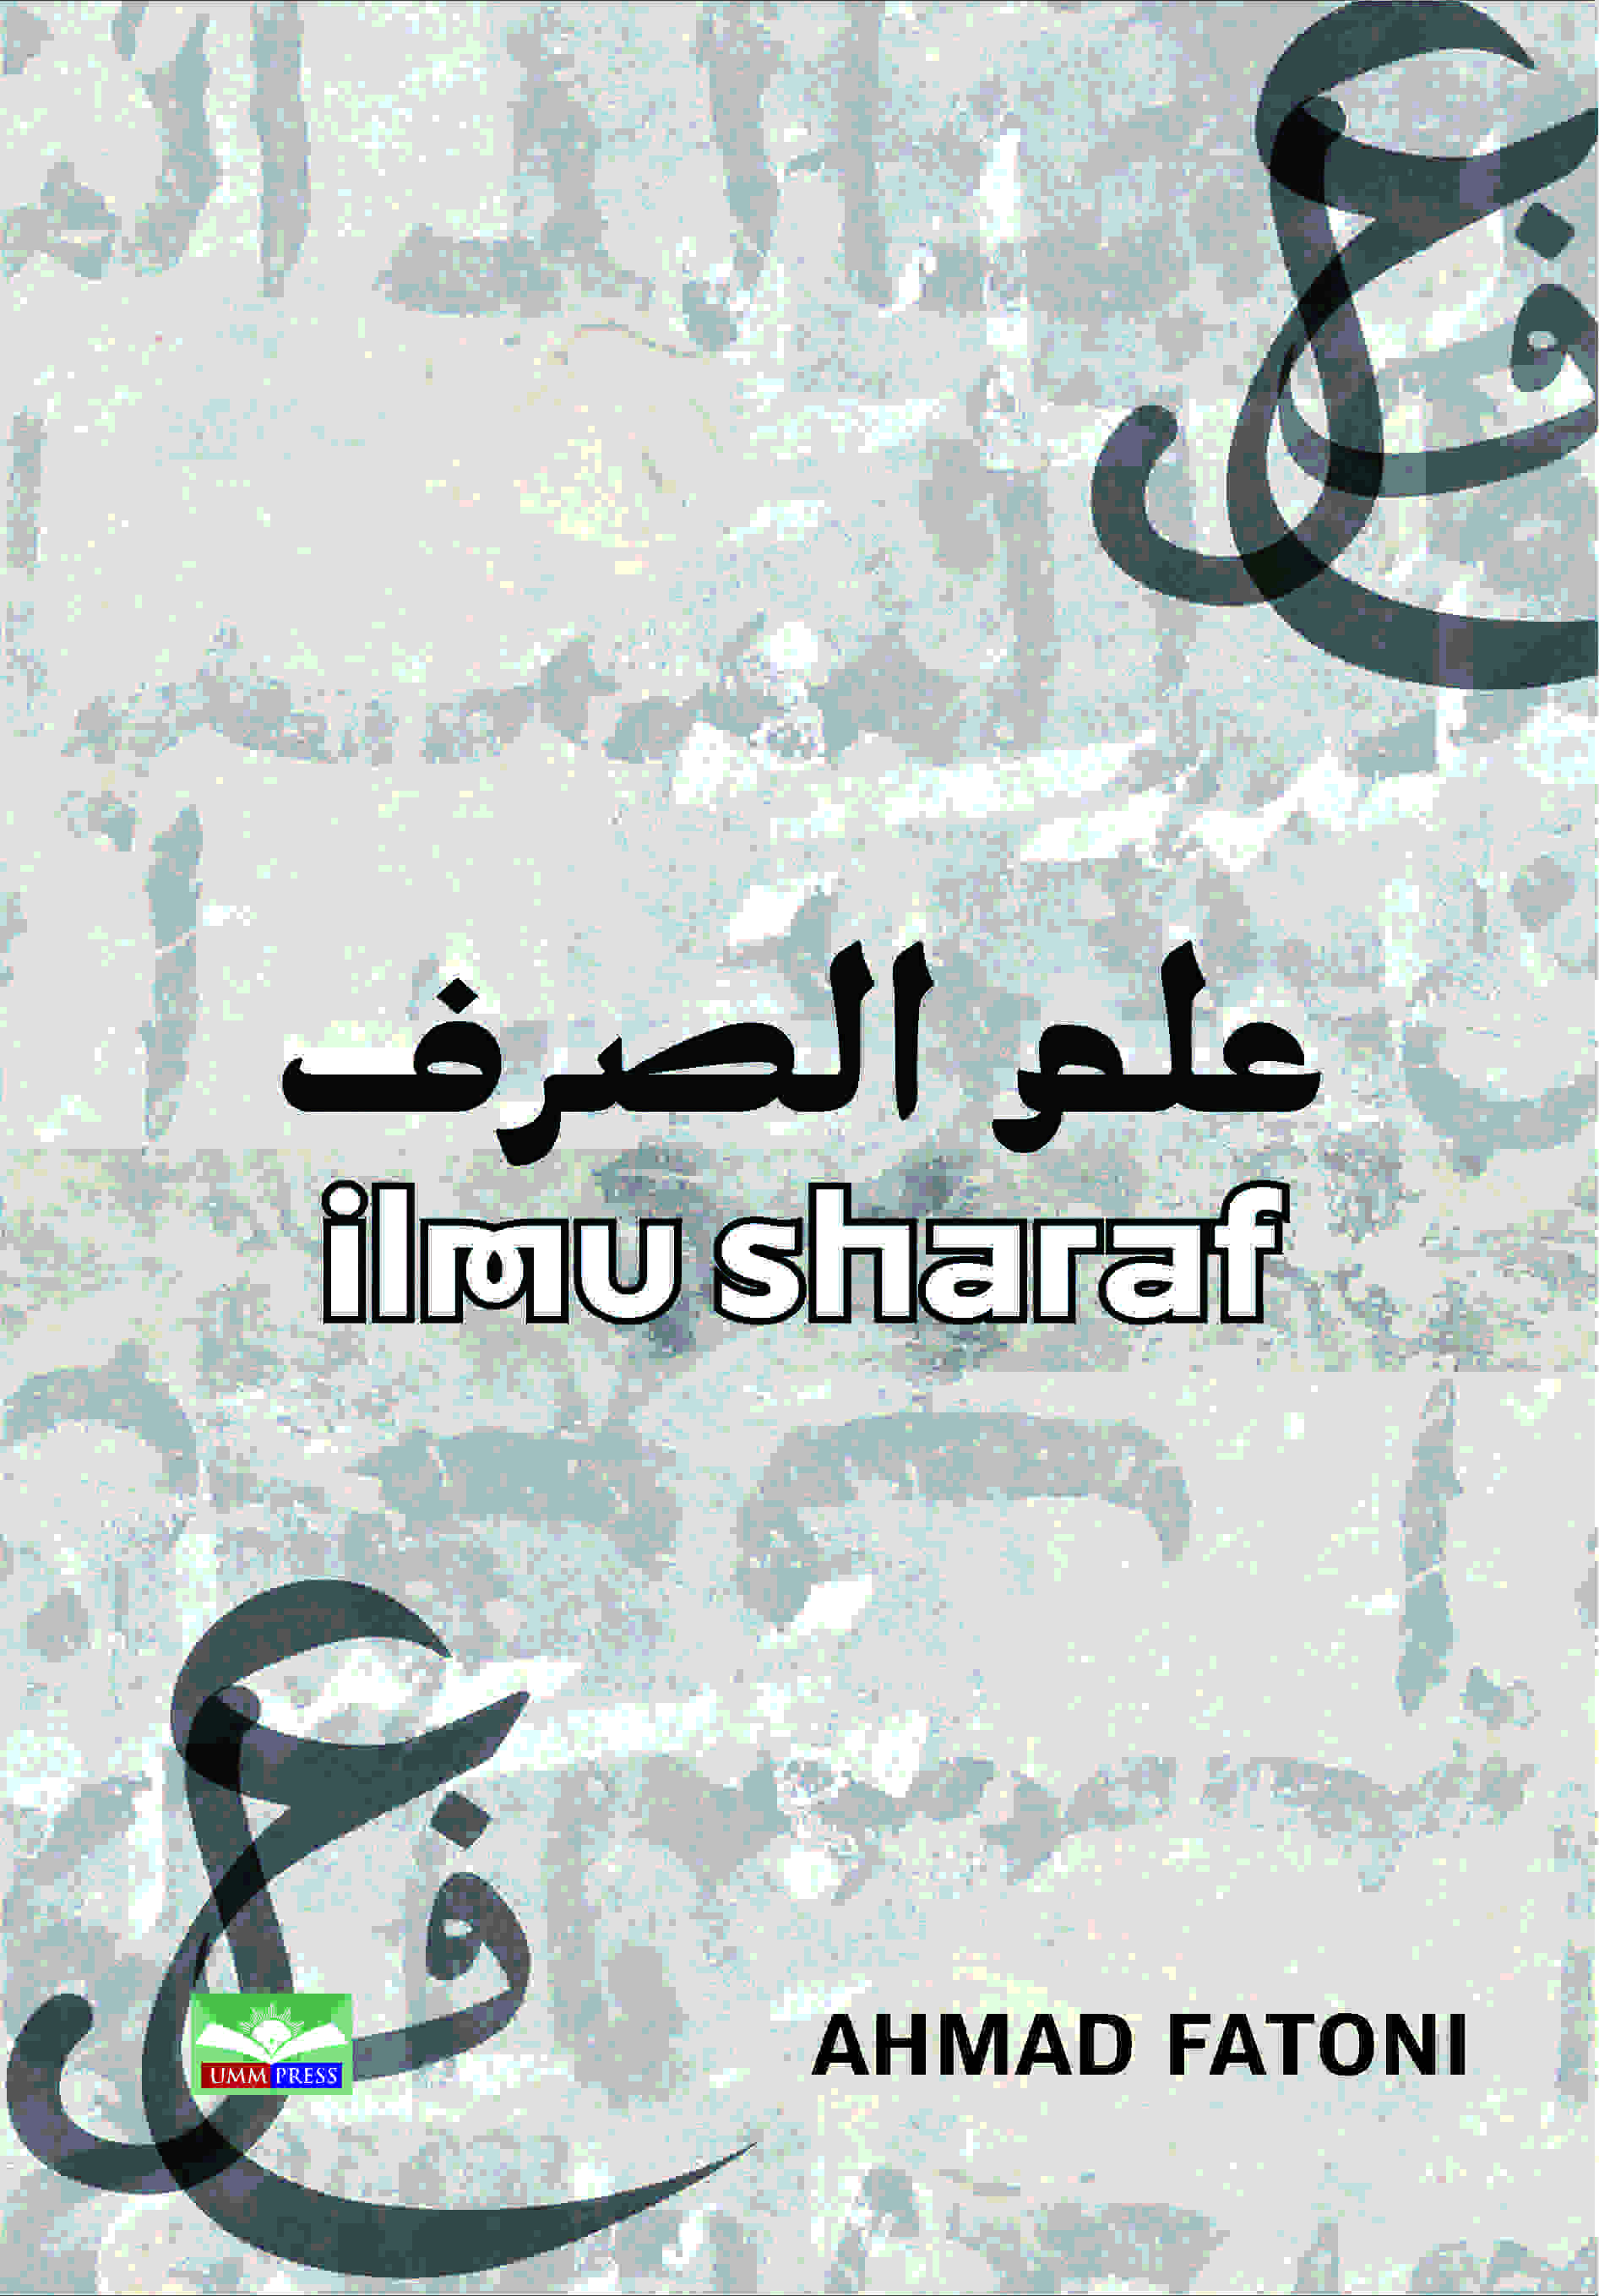 ILMU SHARAF